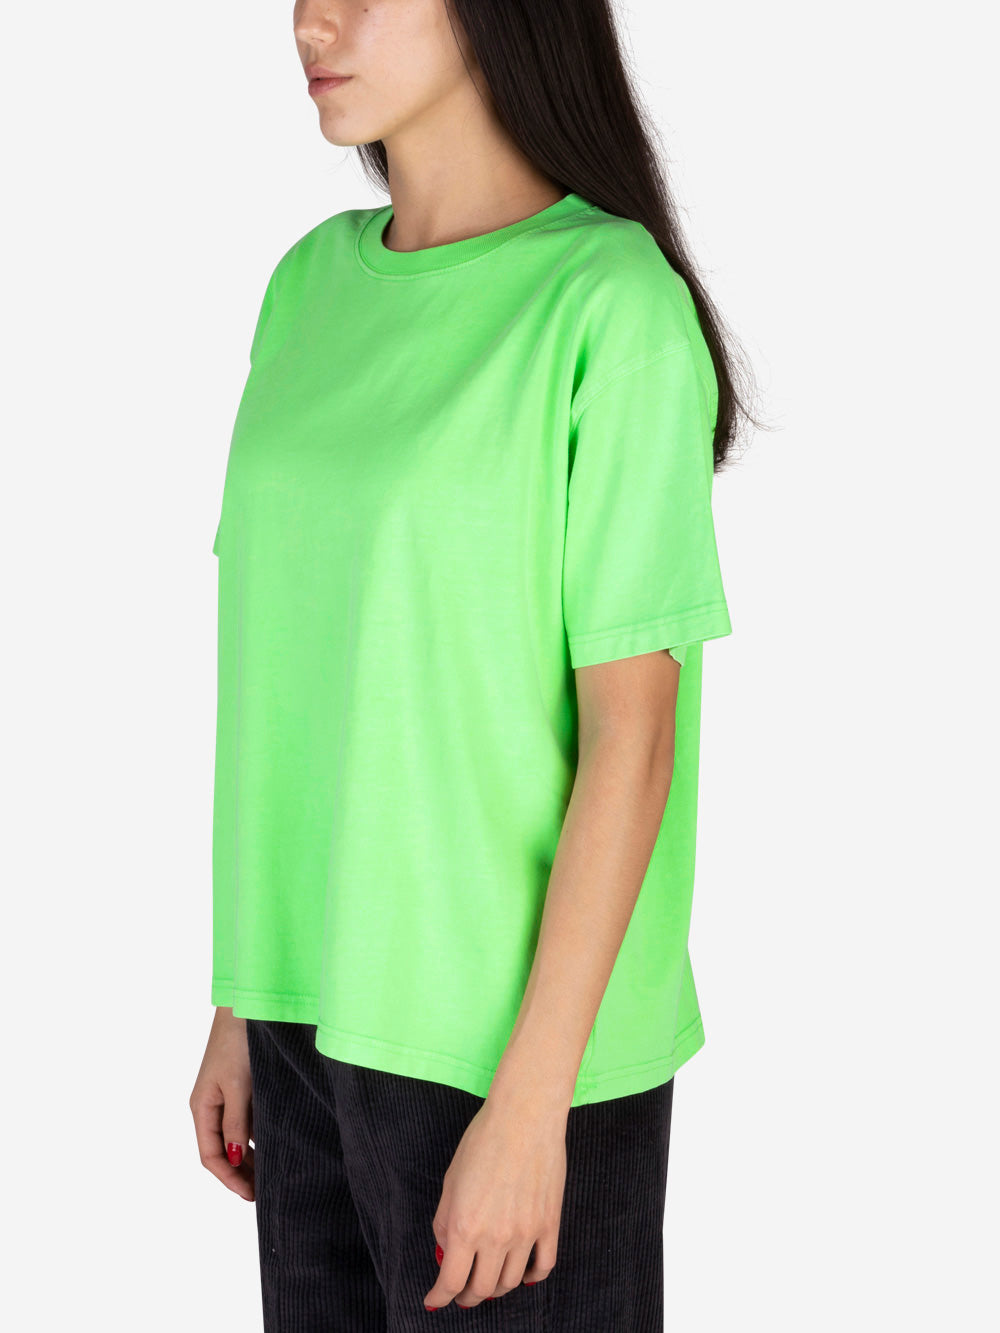 AMERICAN VINTAGE T-shirt Fizvalley verde fluo Verde fluo Urbanstaroma